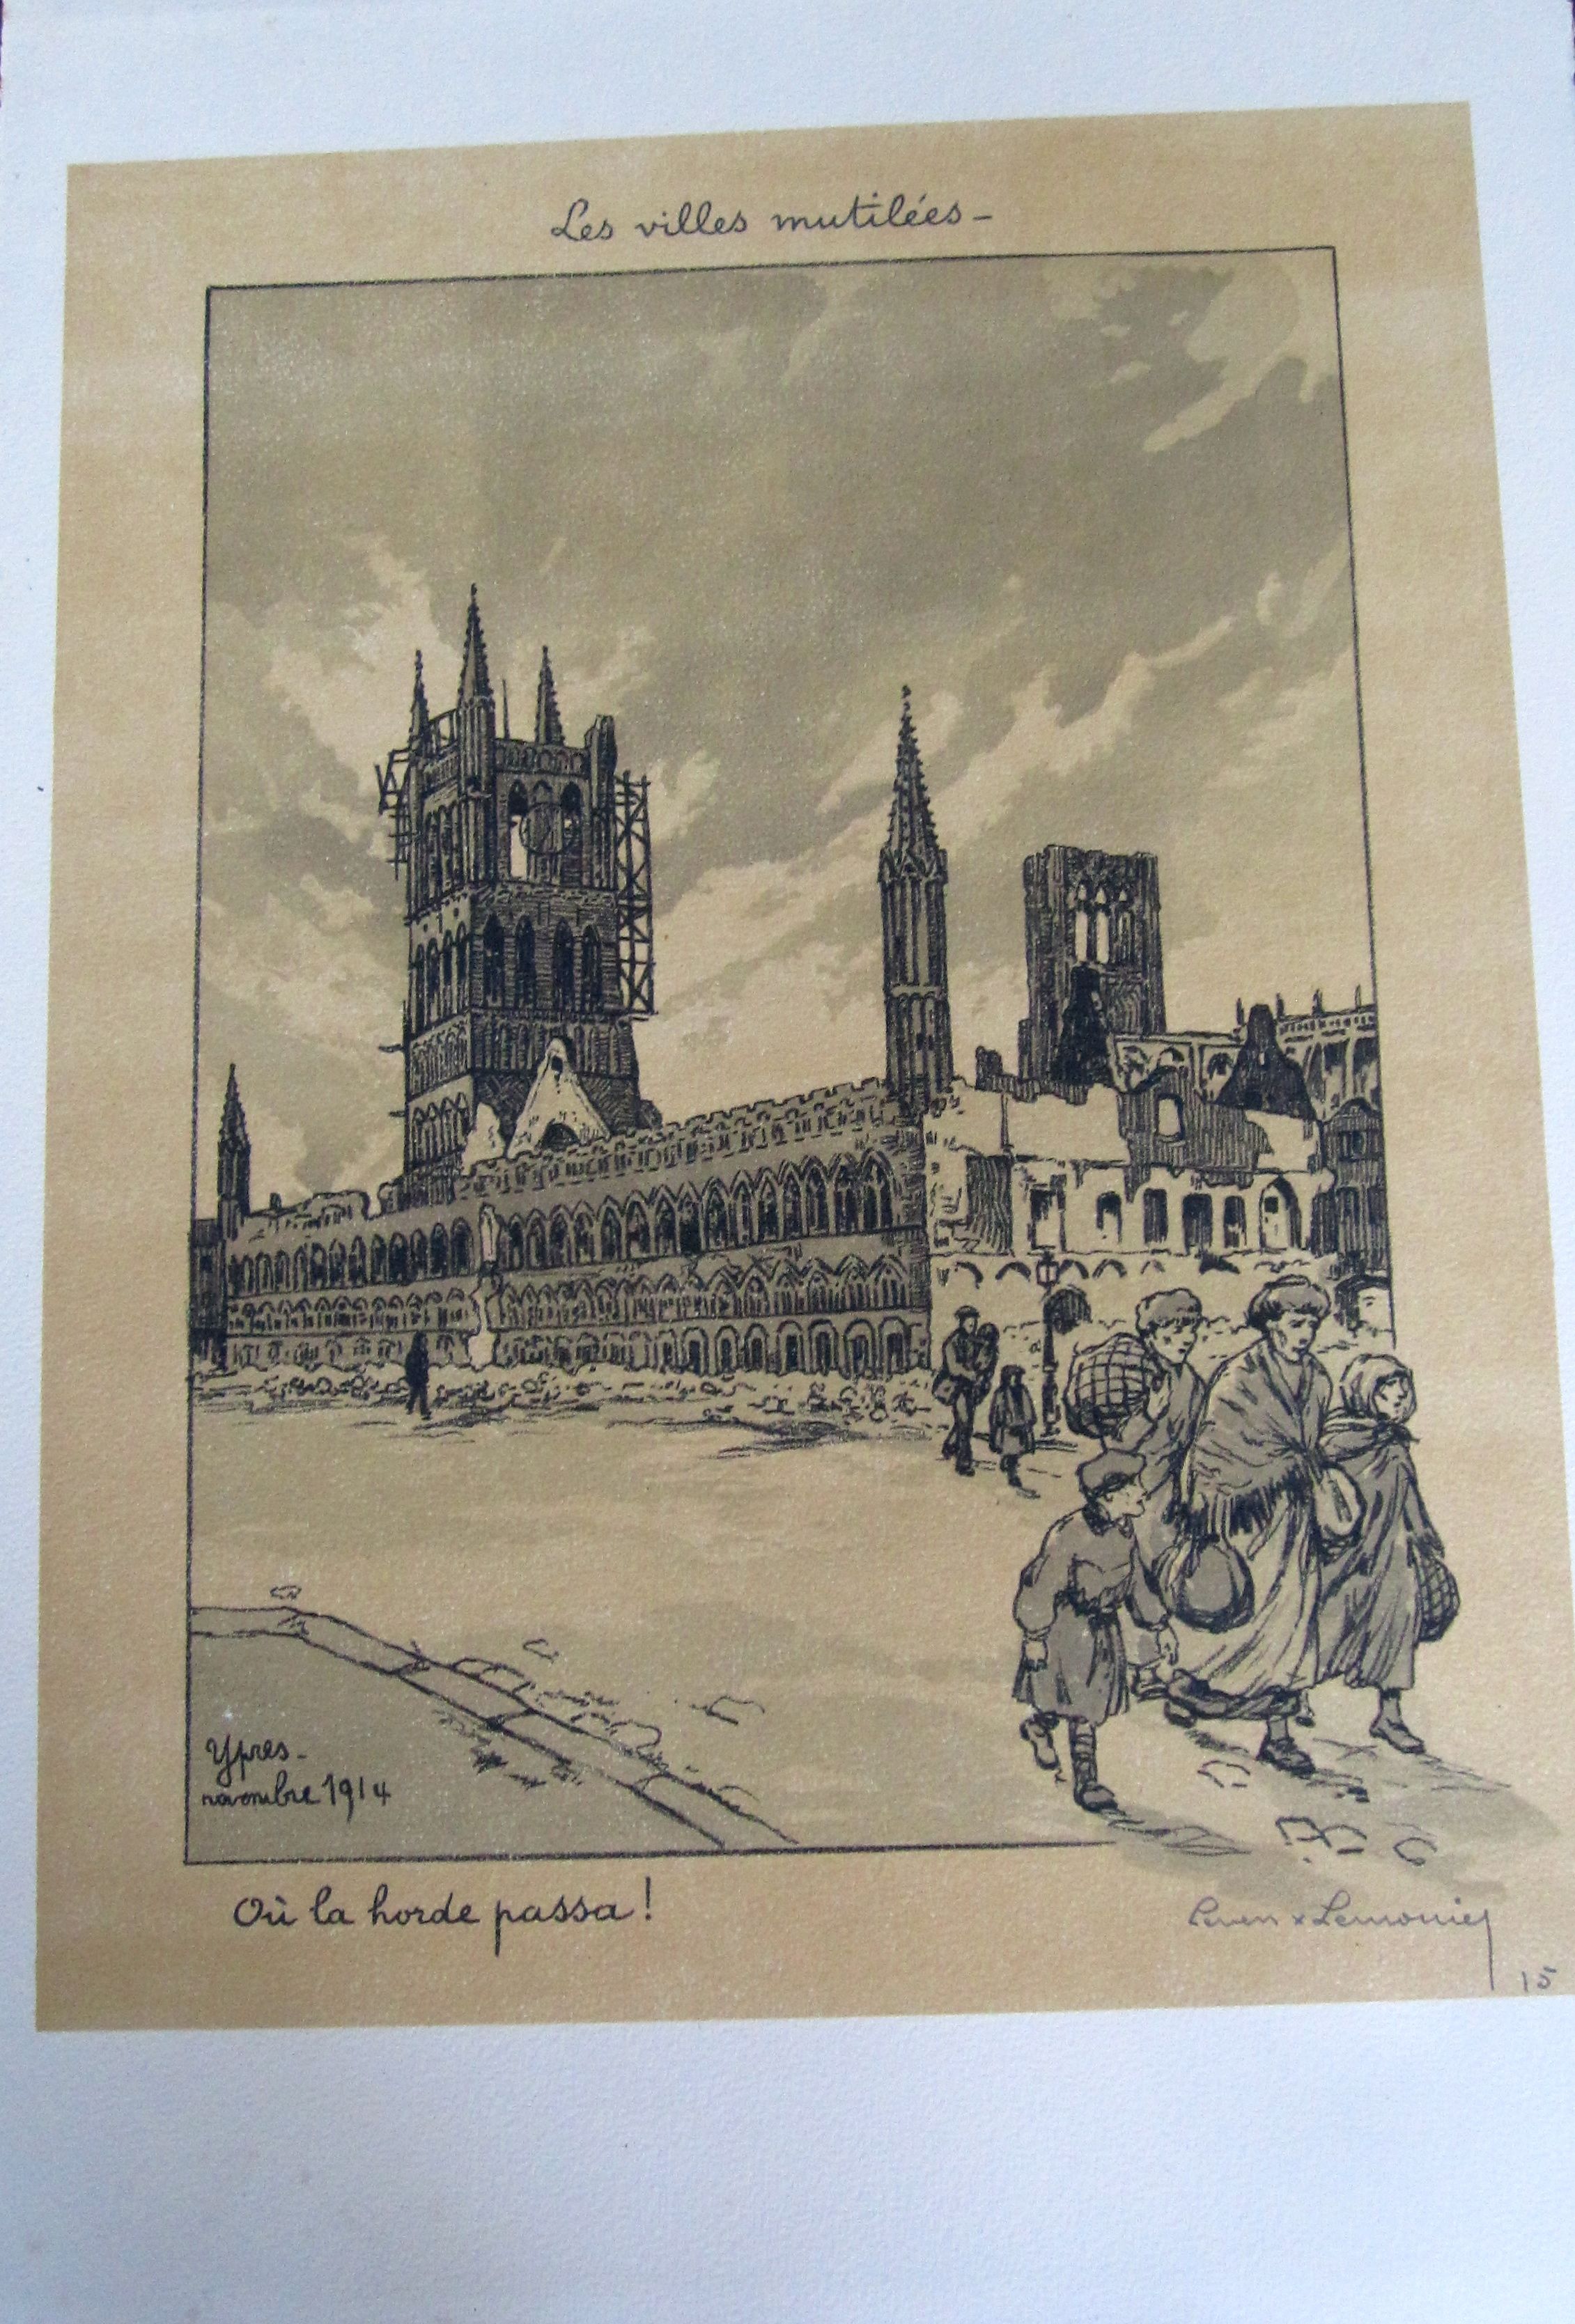 Les villes mutiles : Ypres, Novembre 1914. O la horde passa !